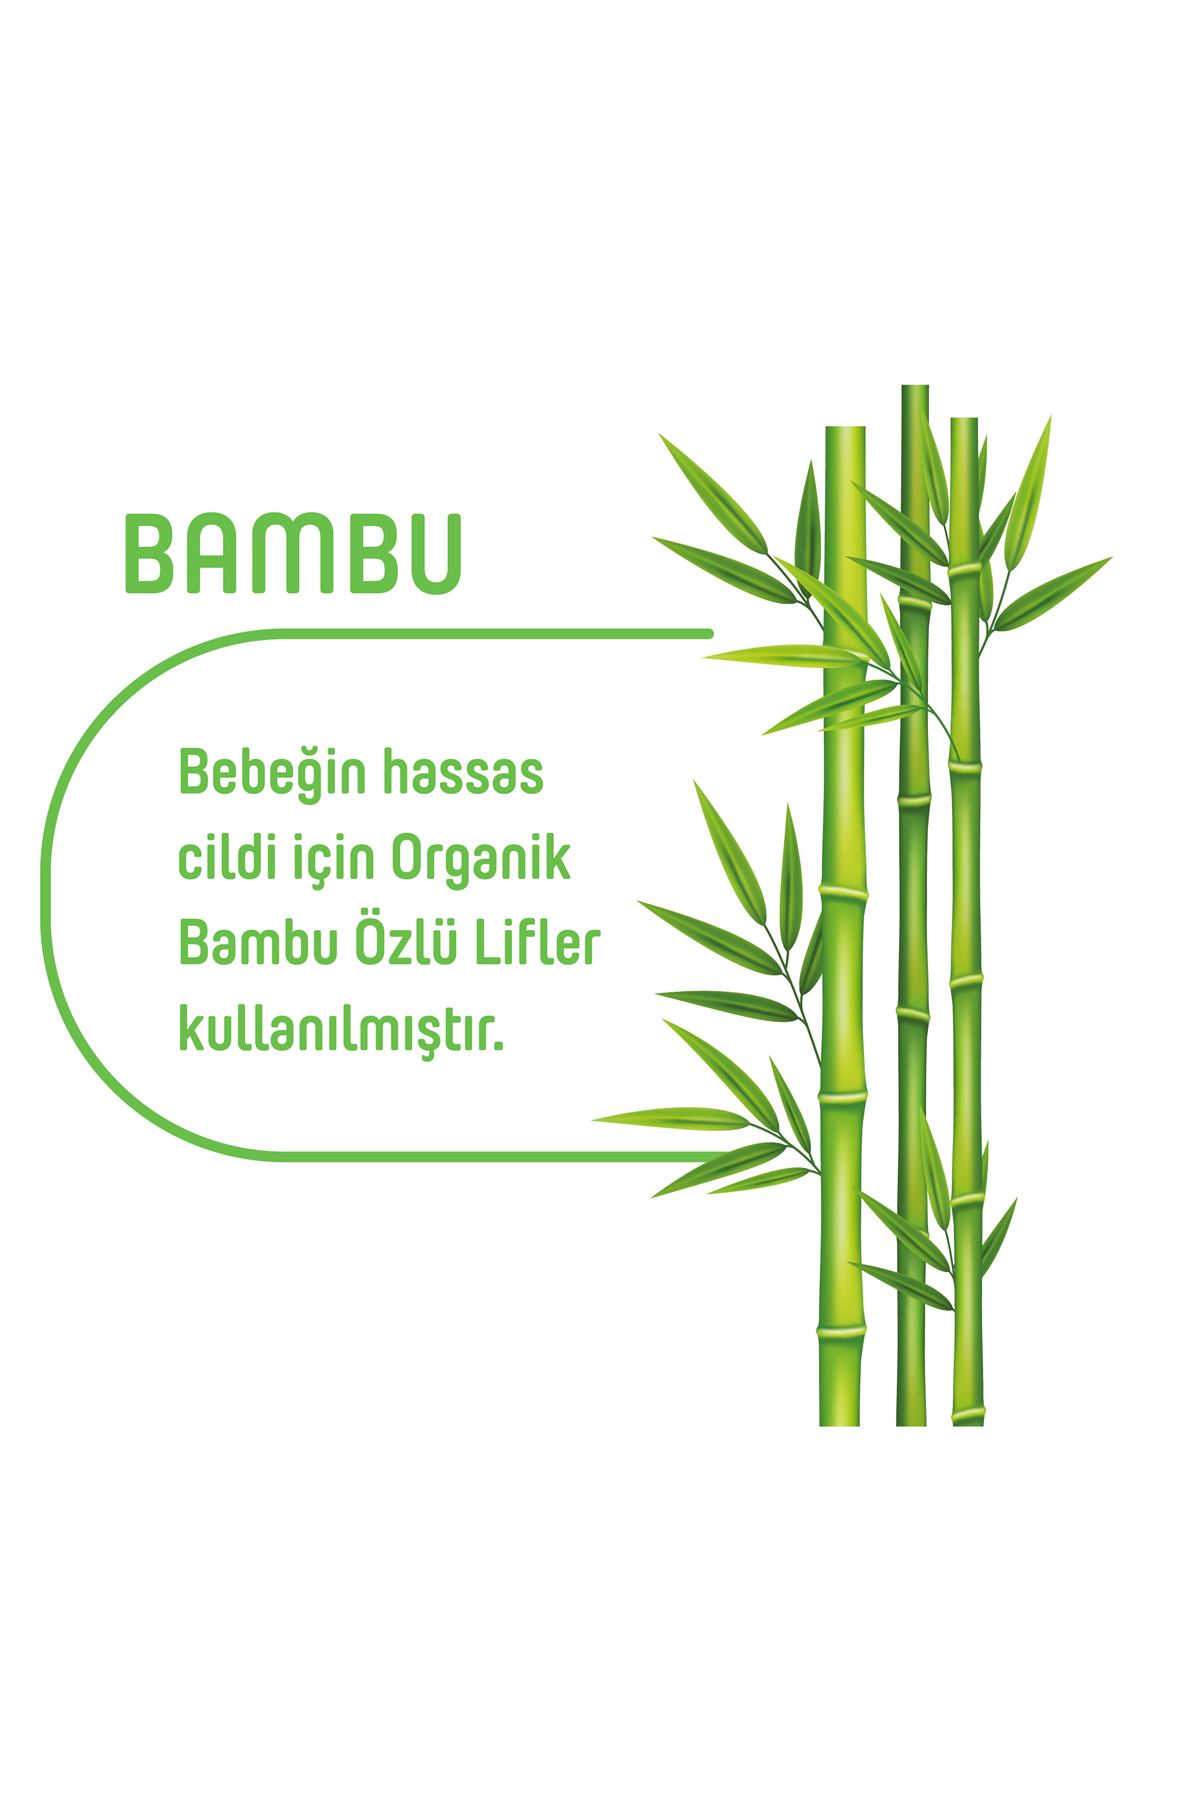 Pure Baby Organik Bambu Özlü Islak Havlu 24×60 (1440 Yaprak)